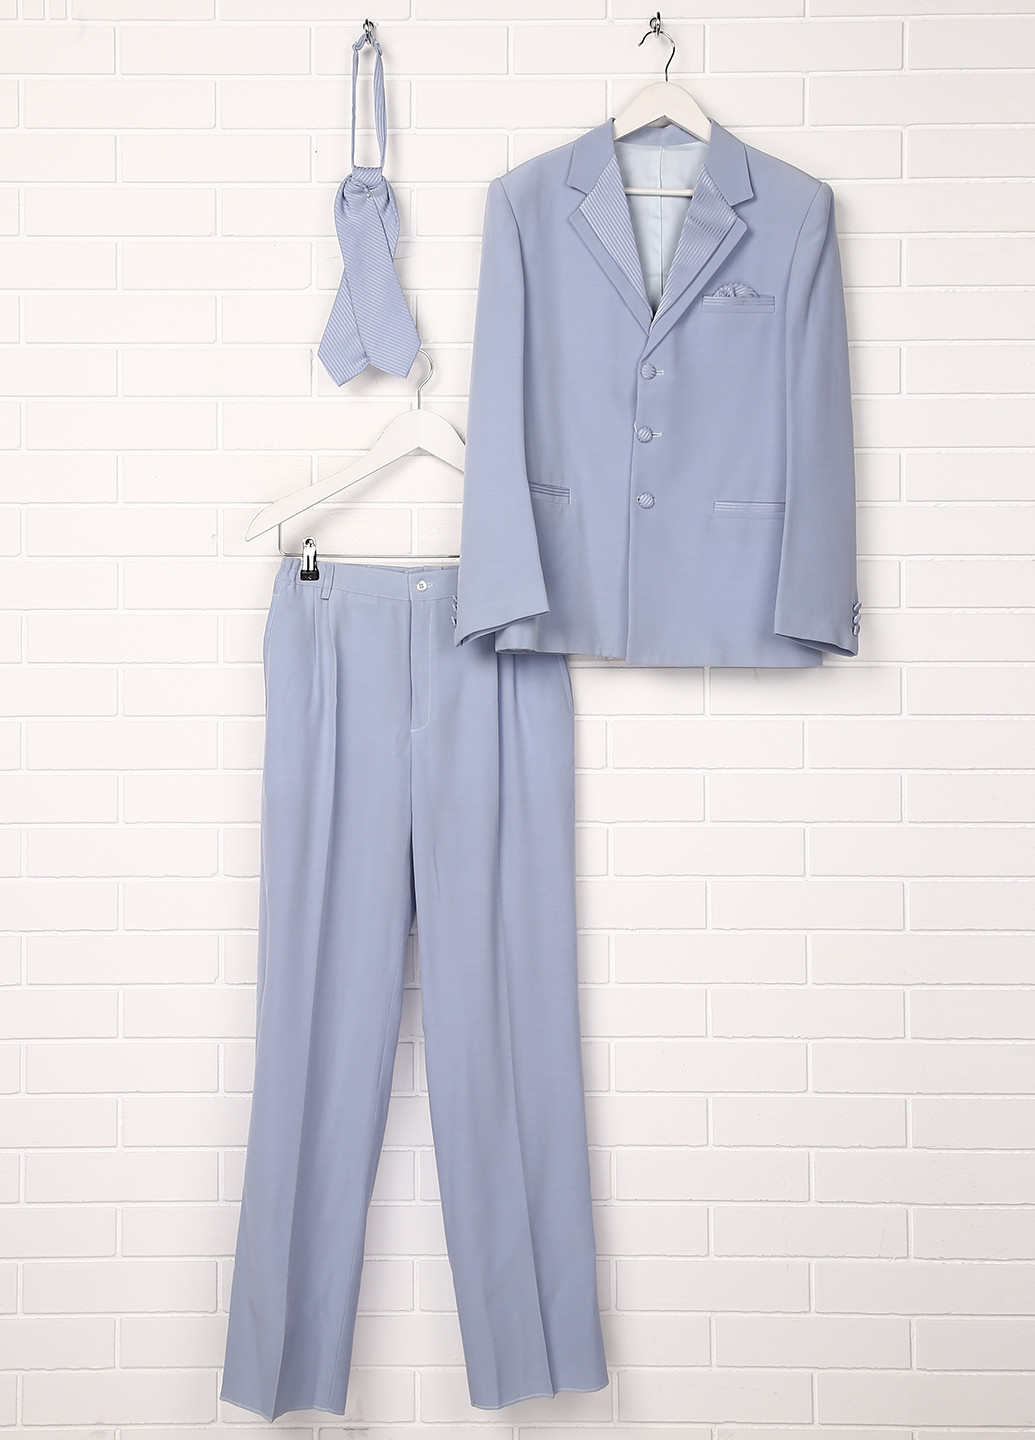 Небесно-голубой демисезонный костюм (пиджак, брюки, галстук) брючный Malip